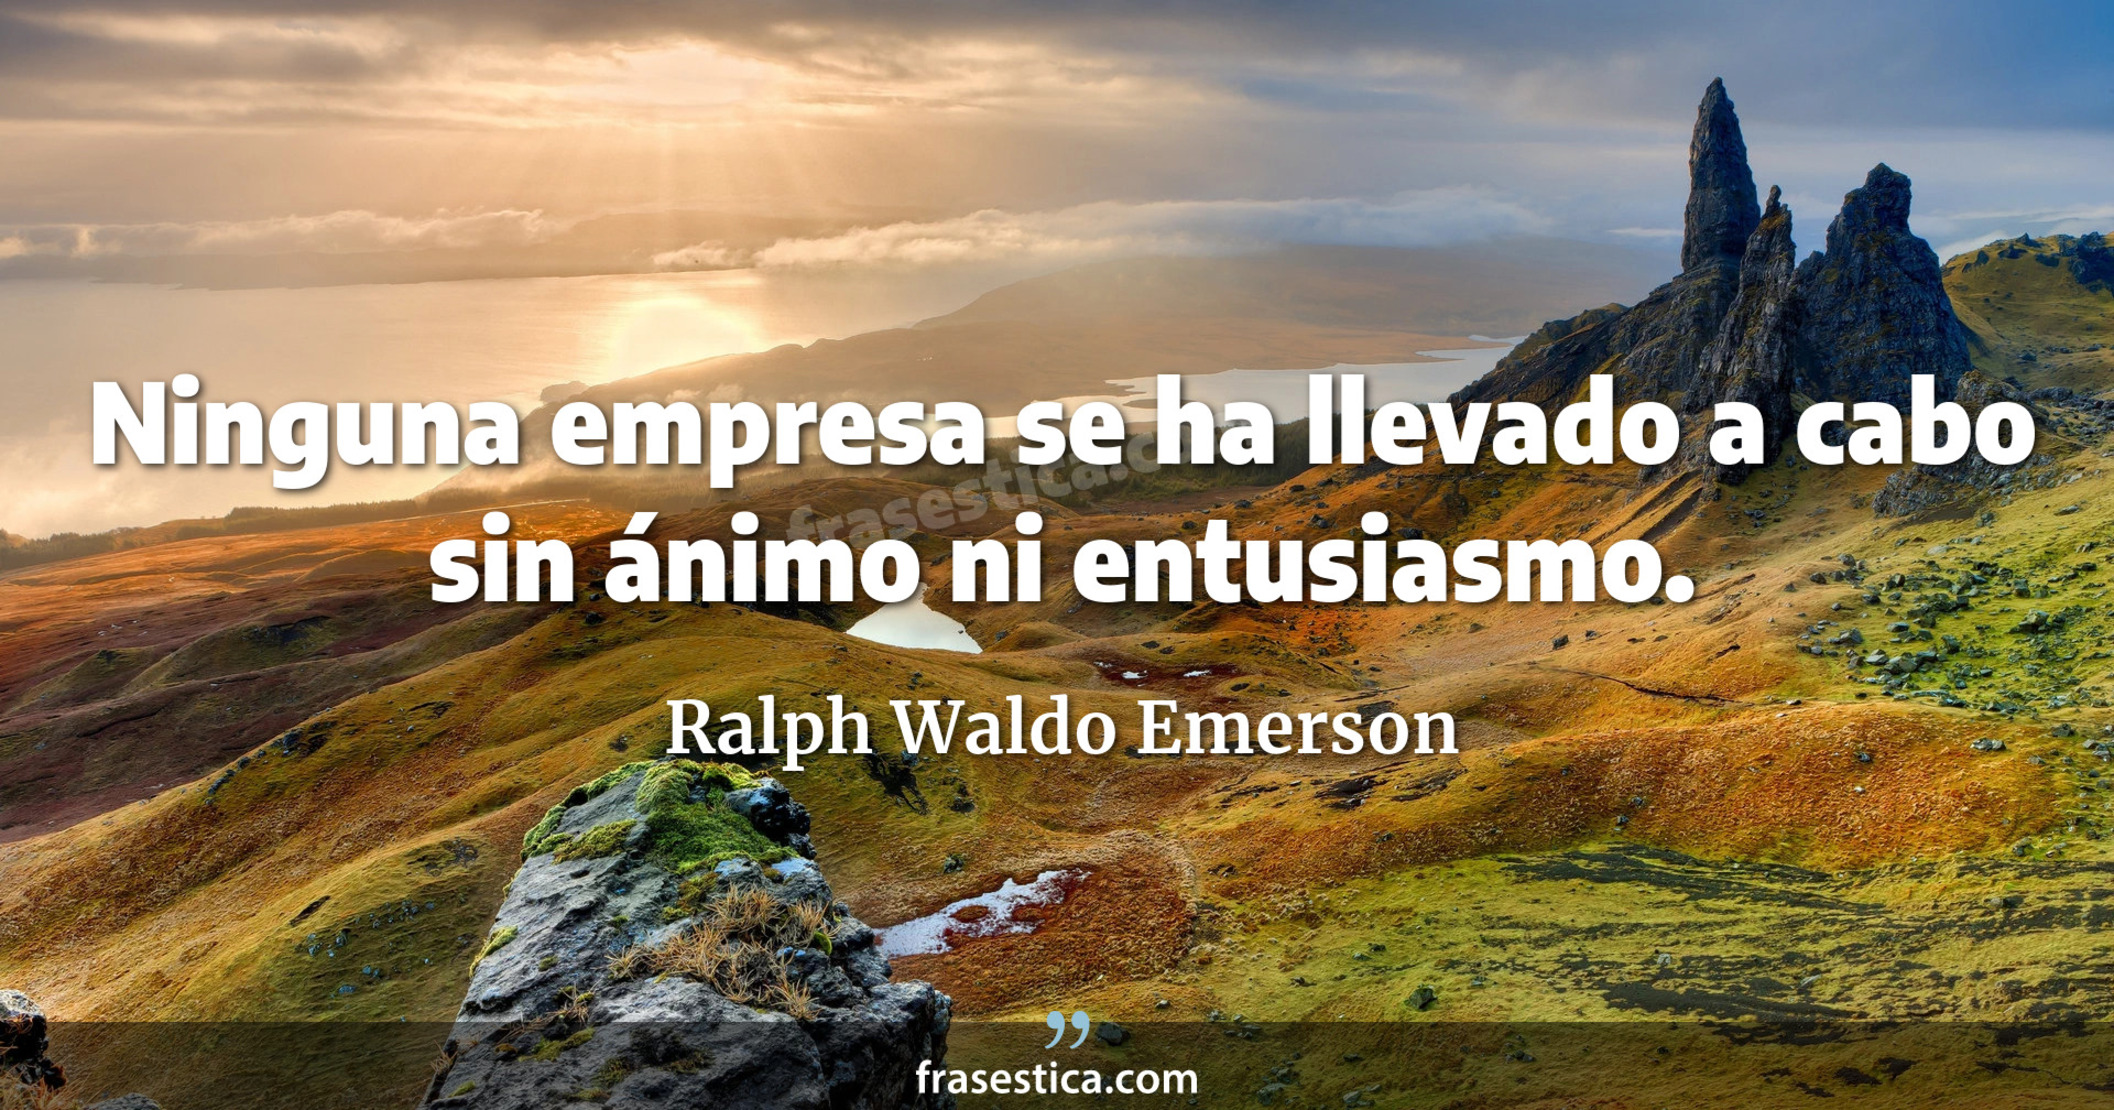 Ninguna empresa se ha llevado a cabo sin ánimo ni entusiasmo. - Ralph Waldo Emerson